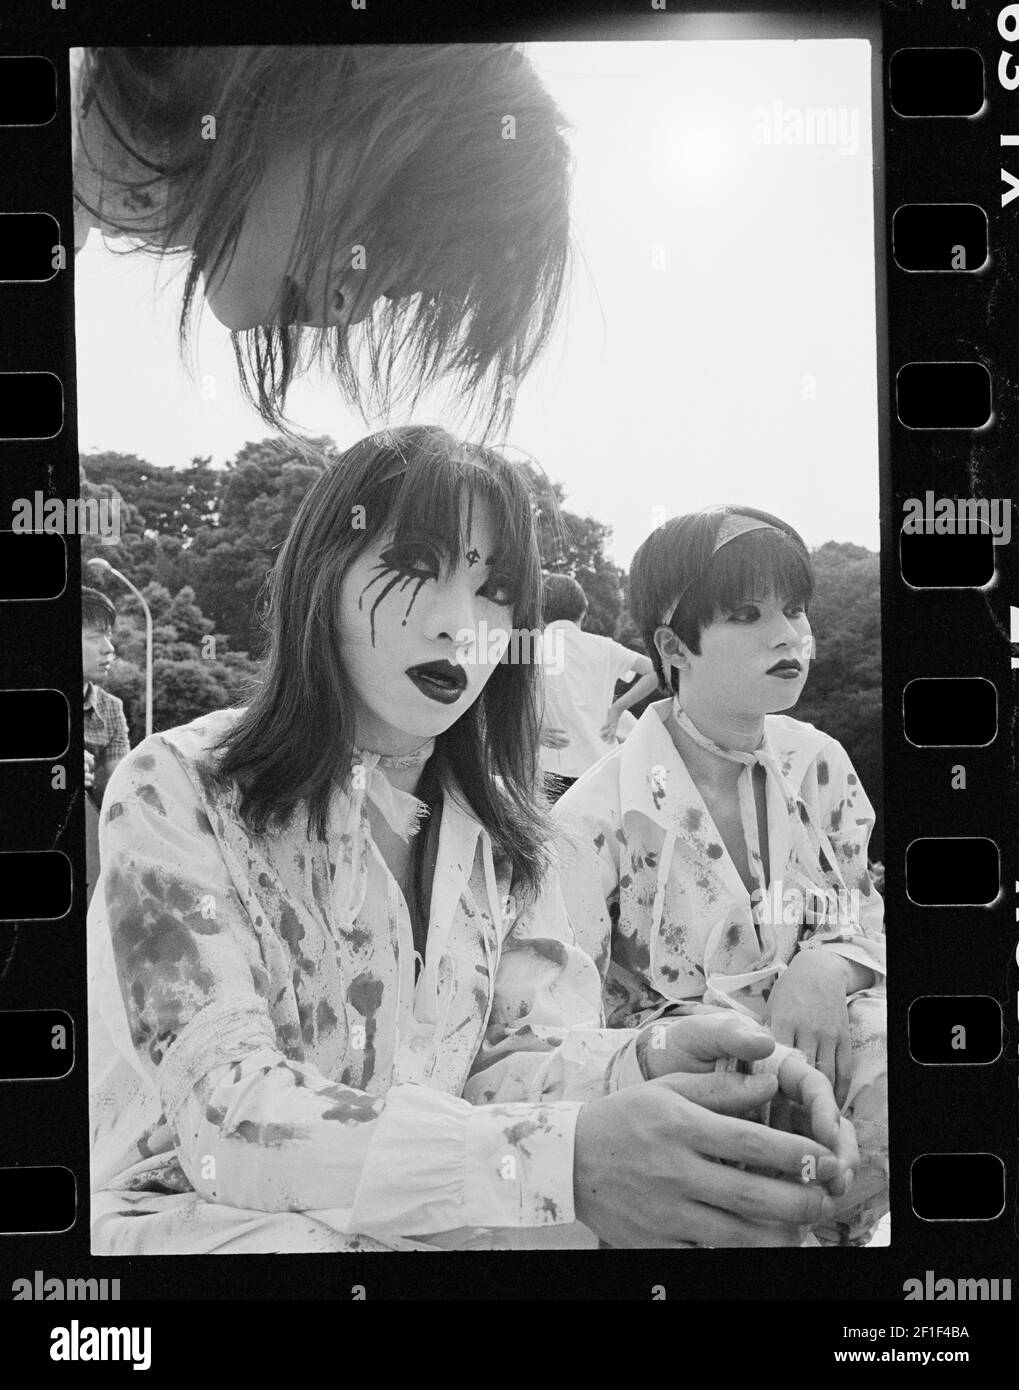 Japon , Tokyo, 1998 , jeunes vêtus de la sous-culture de Harajuku de Yami kawaii ou de style mignonne cette mode accentue la finesse tout en incorporant sy Banque D'Images